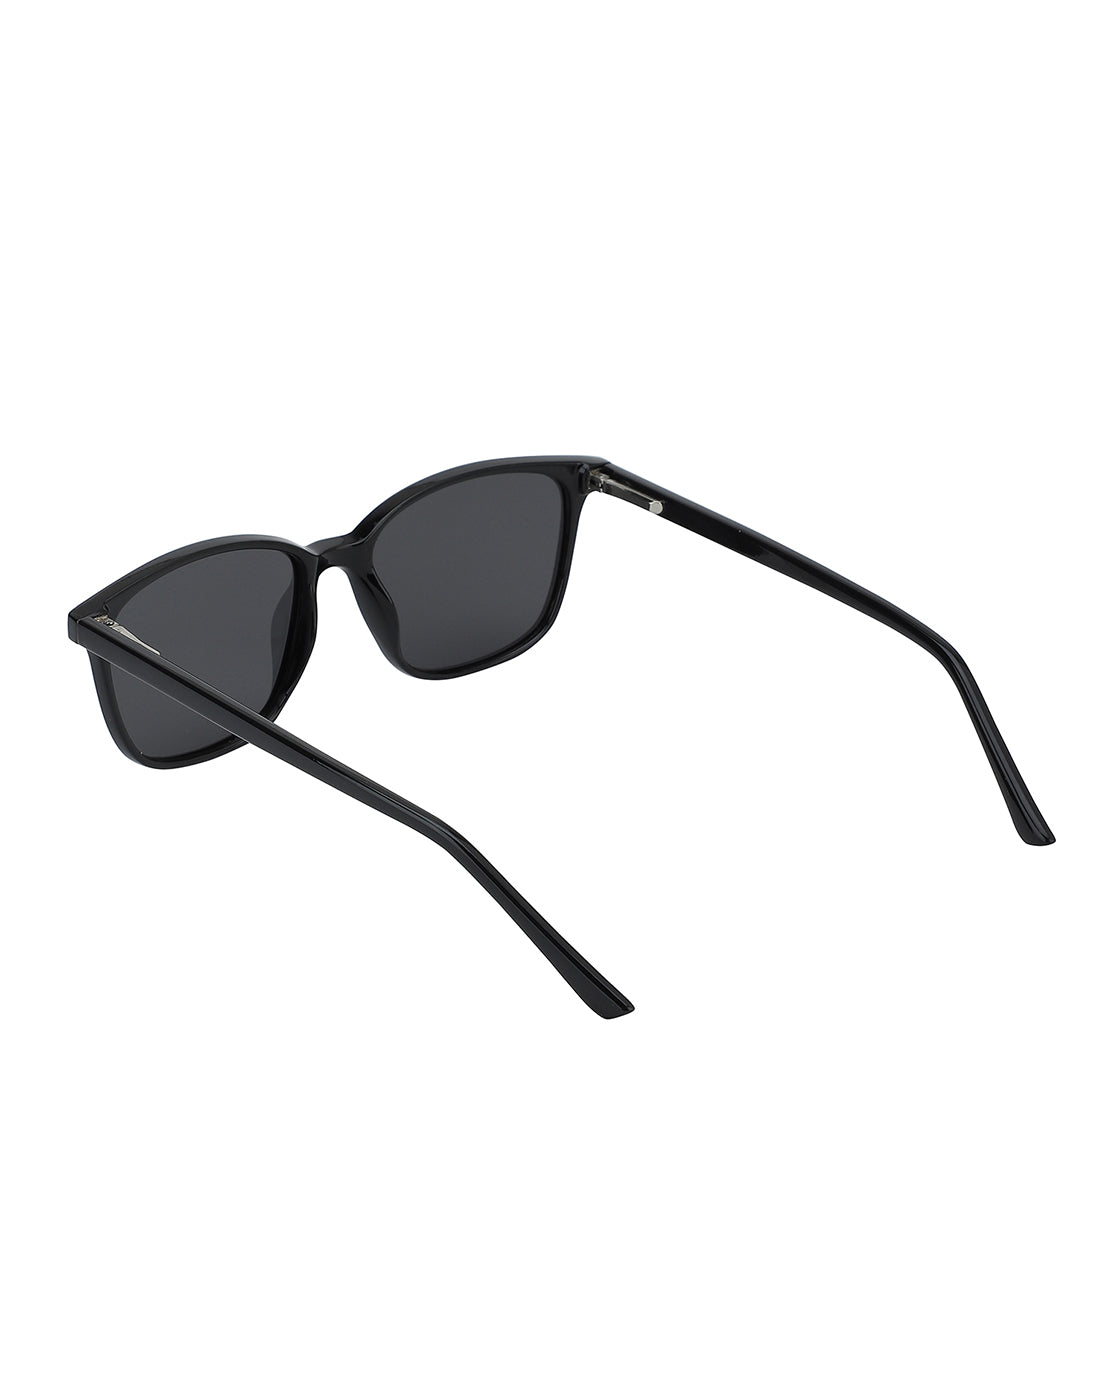 Carlton London Unisex Polarised Square Sunglasses